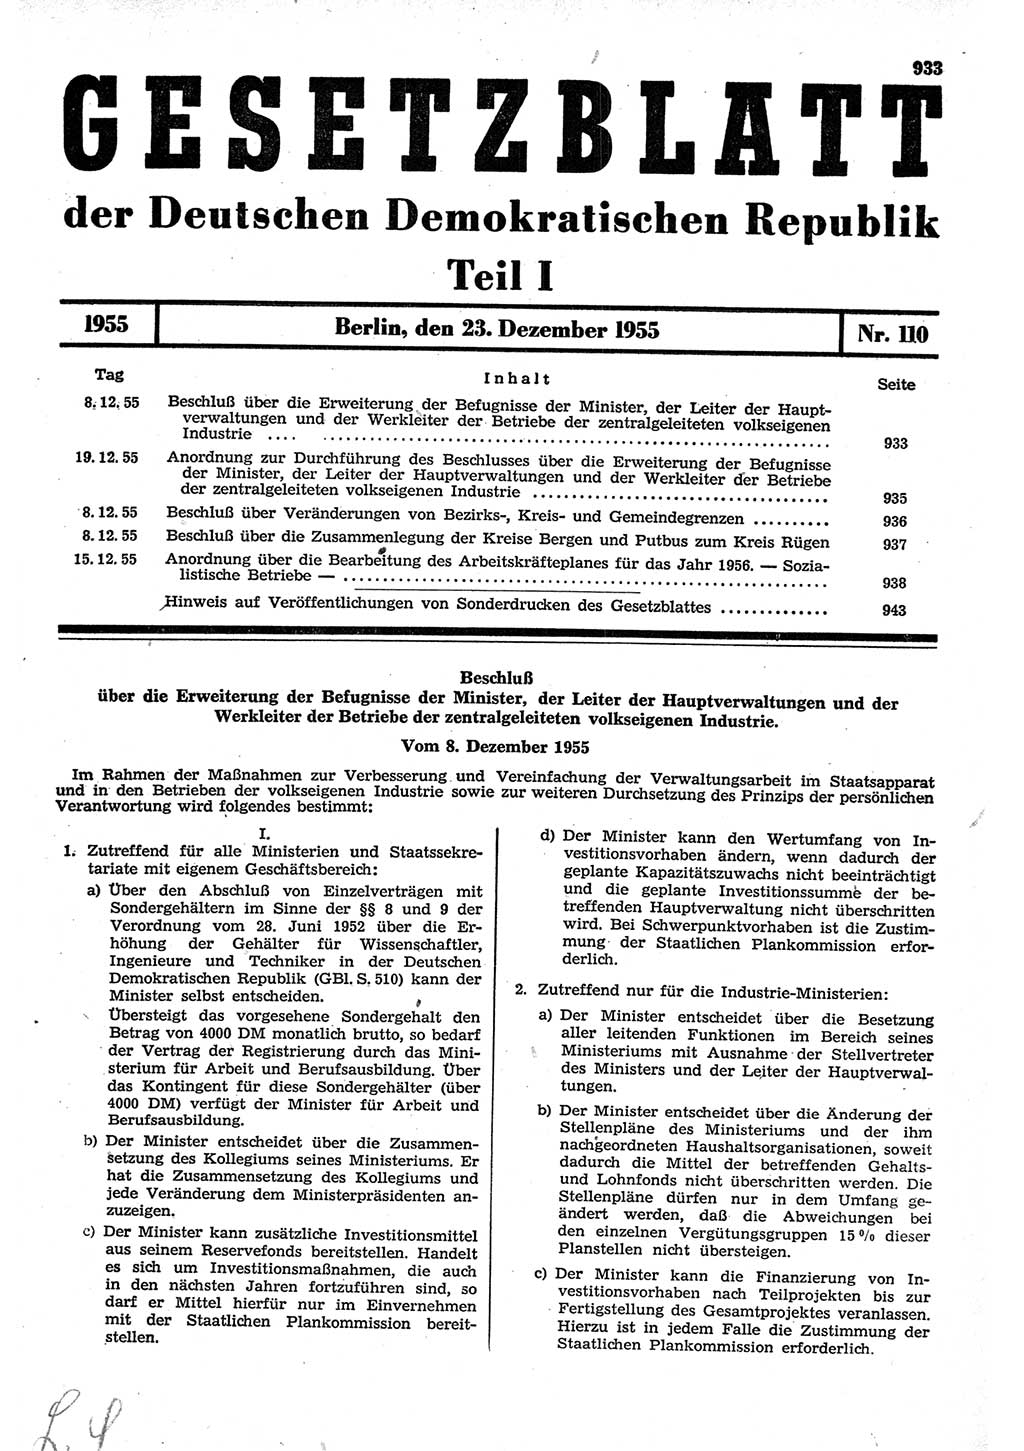 Gesetzblatt (GBl.) der Deutschen Demokratischen Republik (DDR) Teil Ⅰ 1955, Seite 933 (GBl. DDR Ⅰ 1955, S. 933)